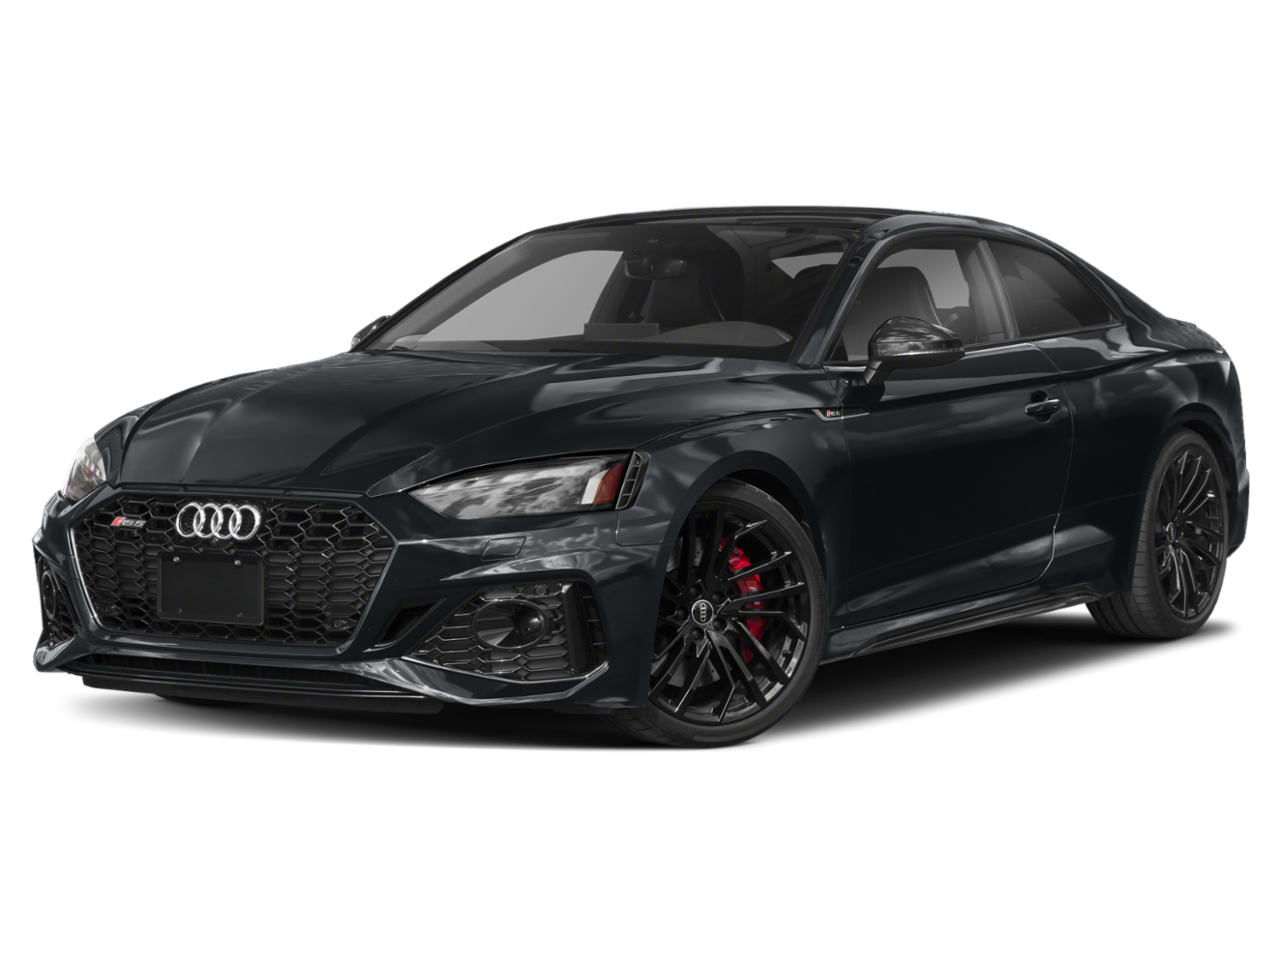 New Audi RS 5 Coupe in Dallas, Houston & San Antonio